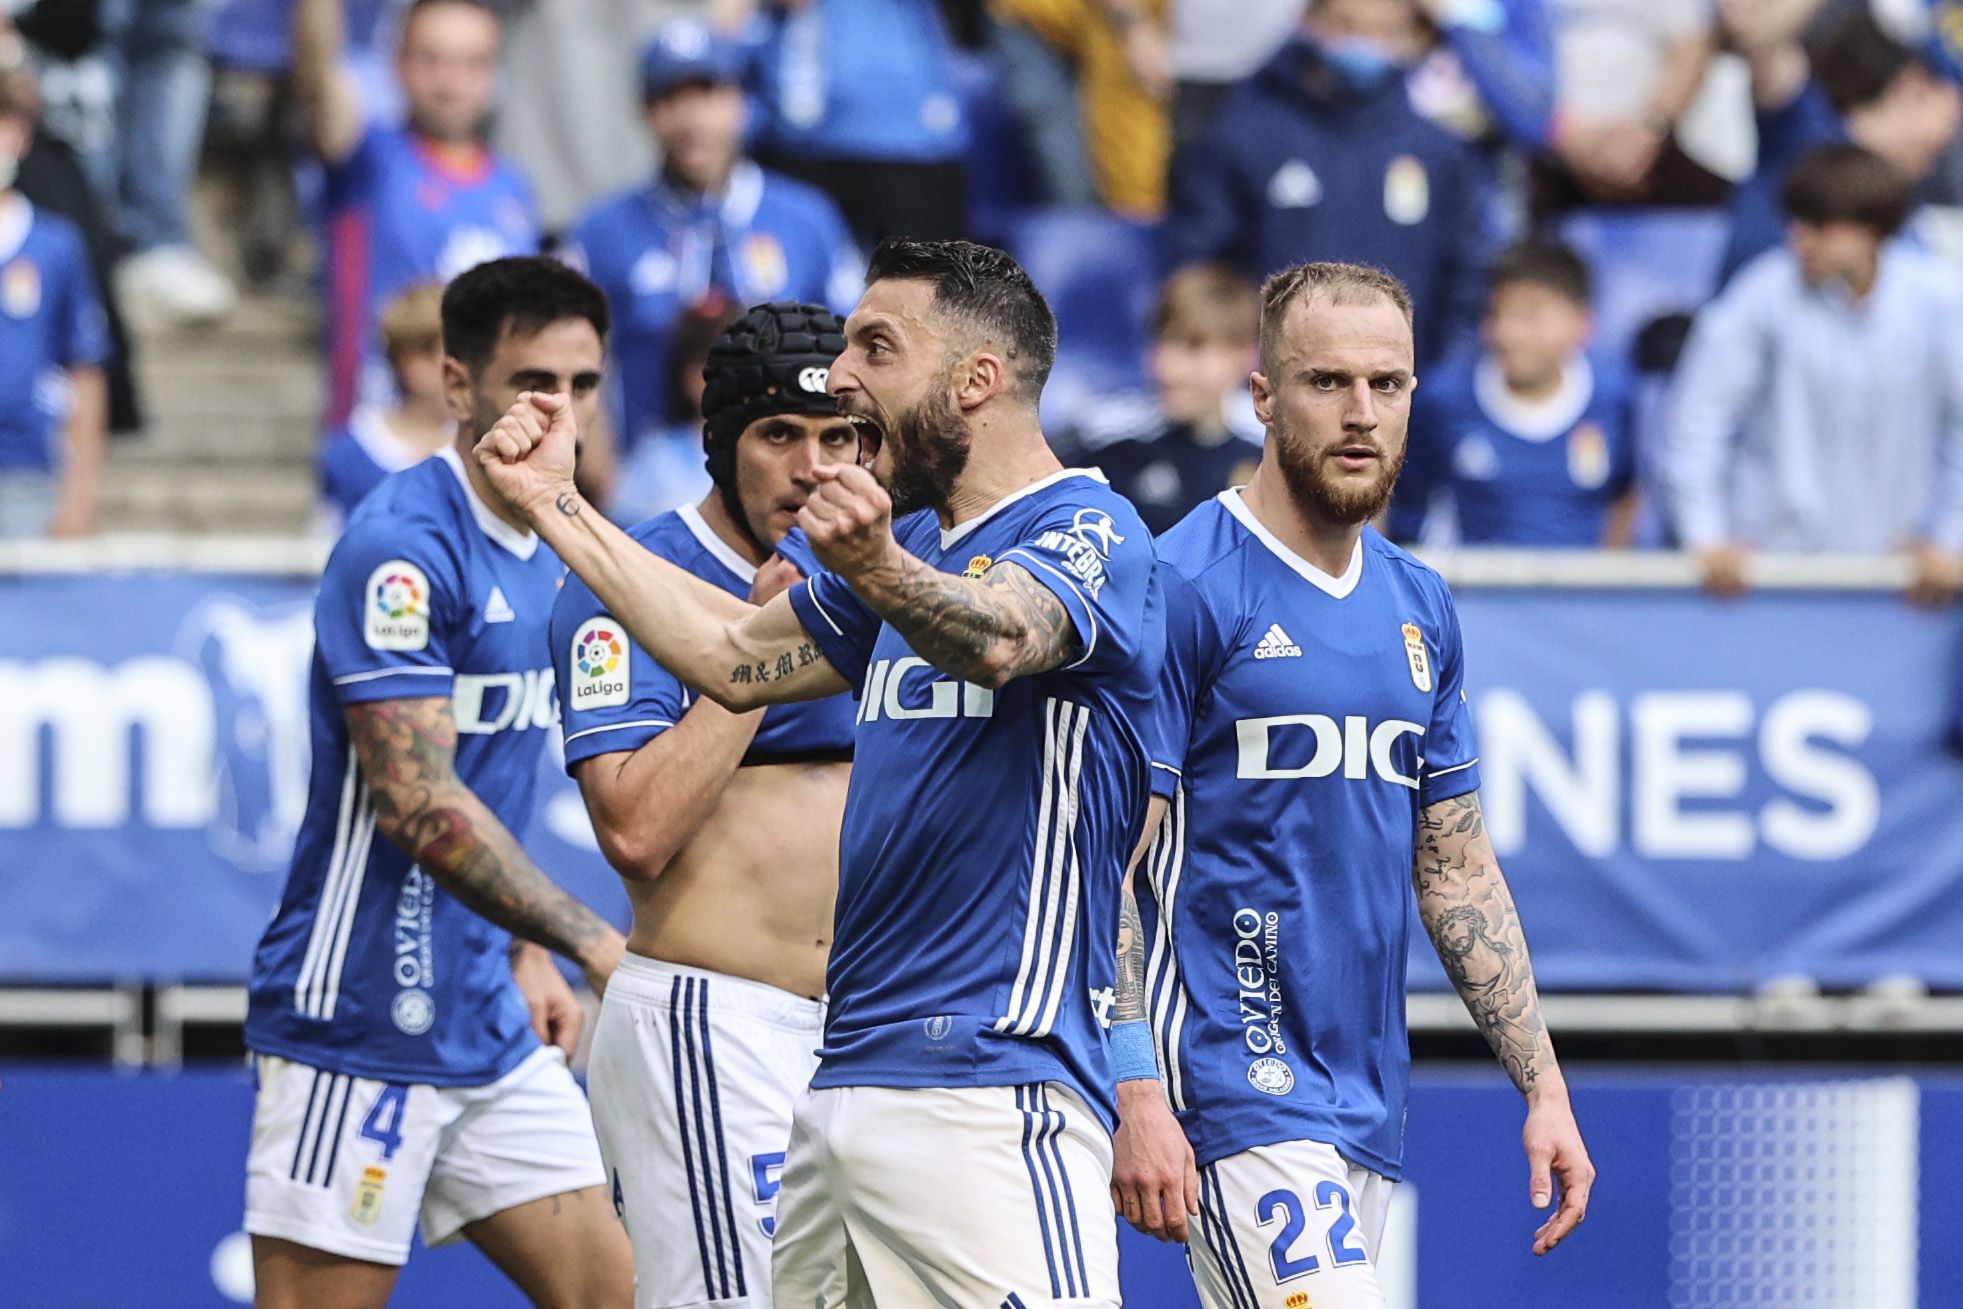 IMÁGENES: Así fue el partido entre el Oviedo y el Leganés